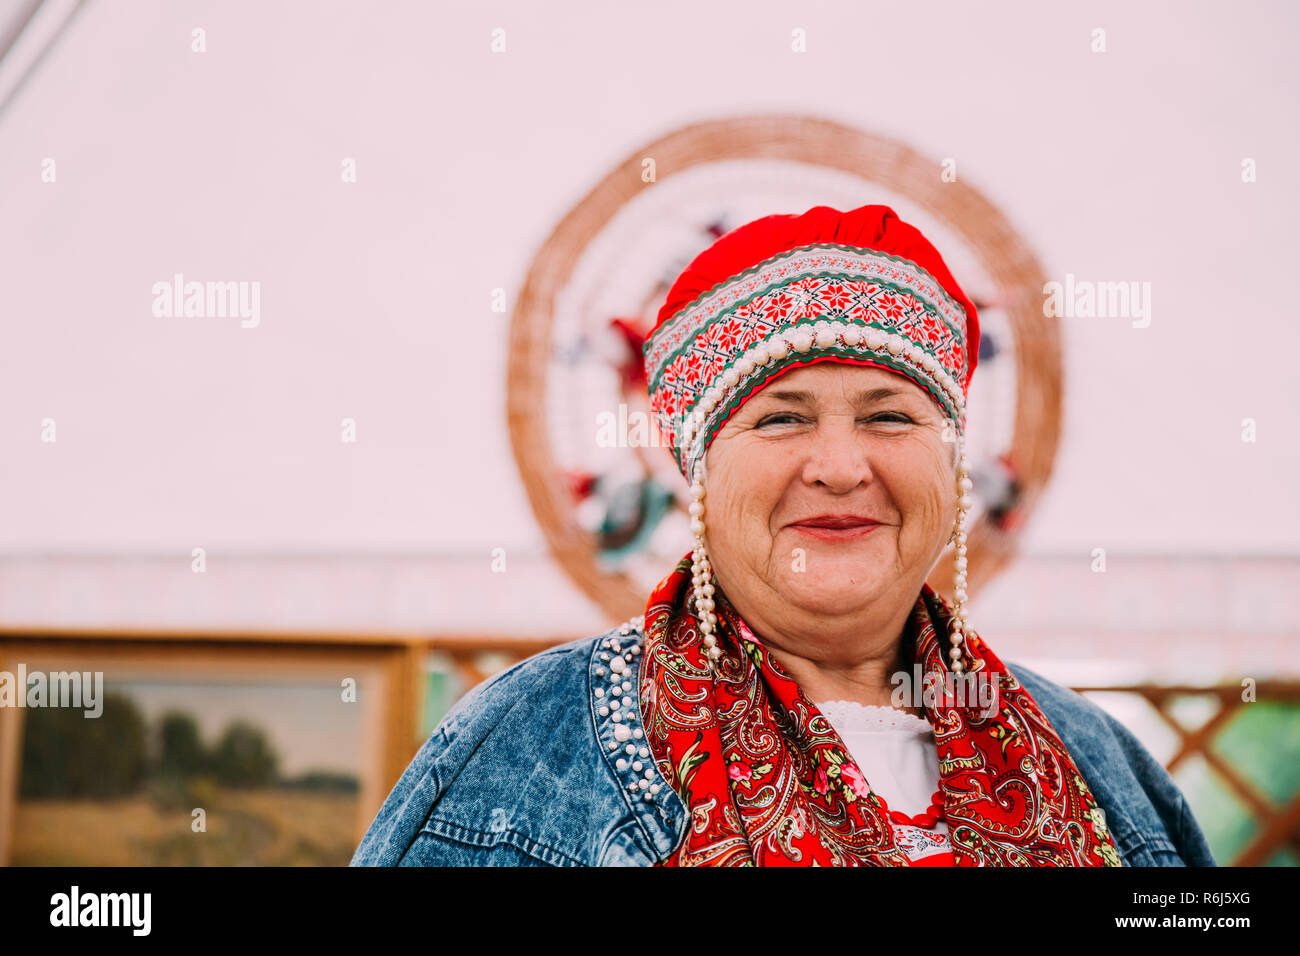 Minsk, Belarus - 23 juin 2018 : femme de gens traditionnels ethniques Costume National Russe de l'appareil photo en souriant Banque D'Images